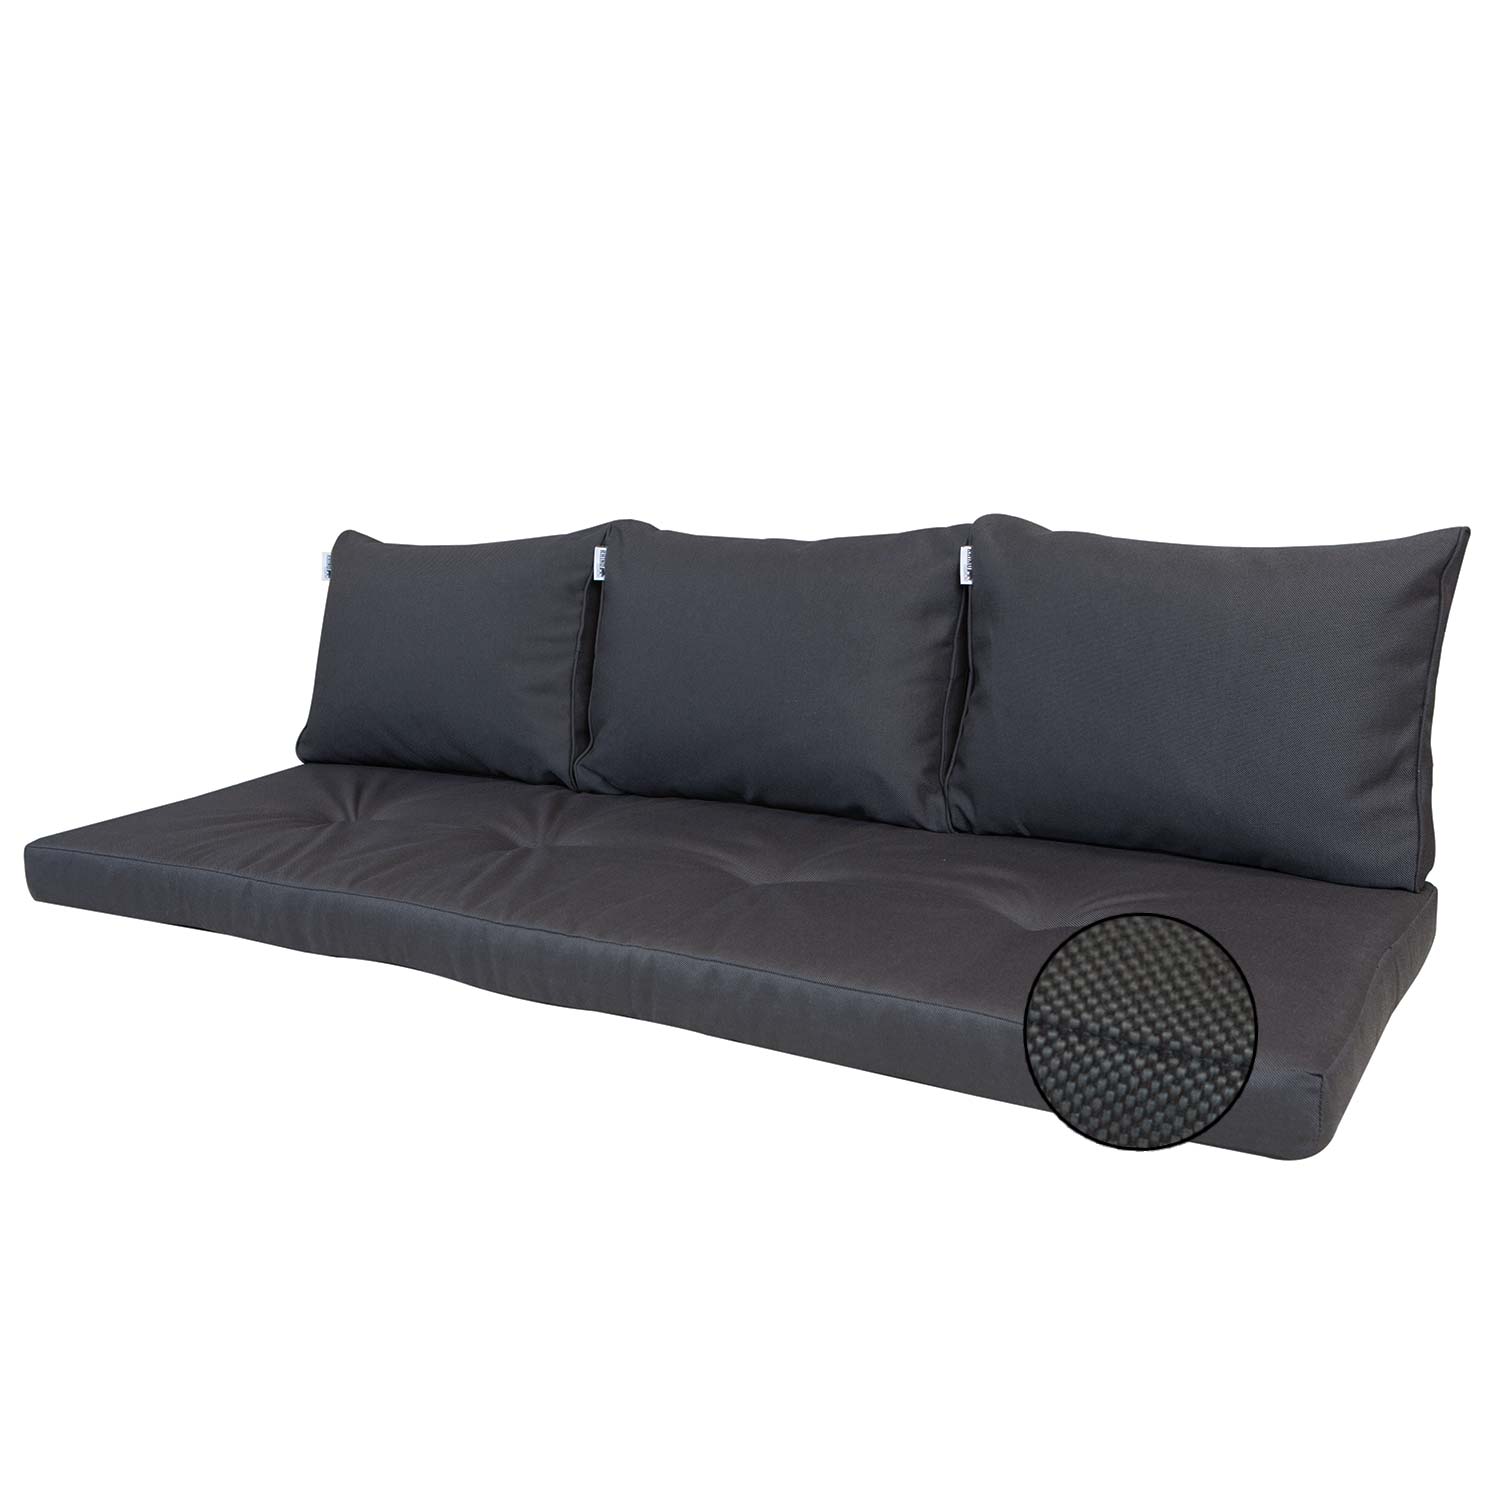 Loungekussen bank zit en rug 180cm (180x60cm) - Ribera dark grey (waterafstotend)